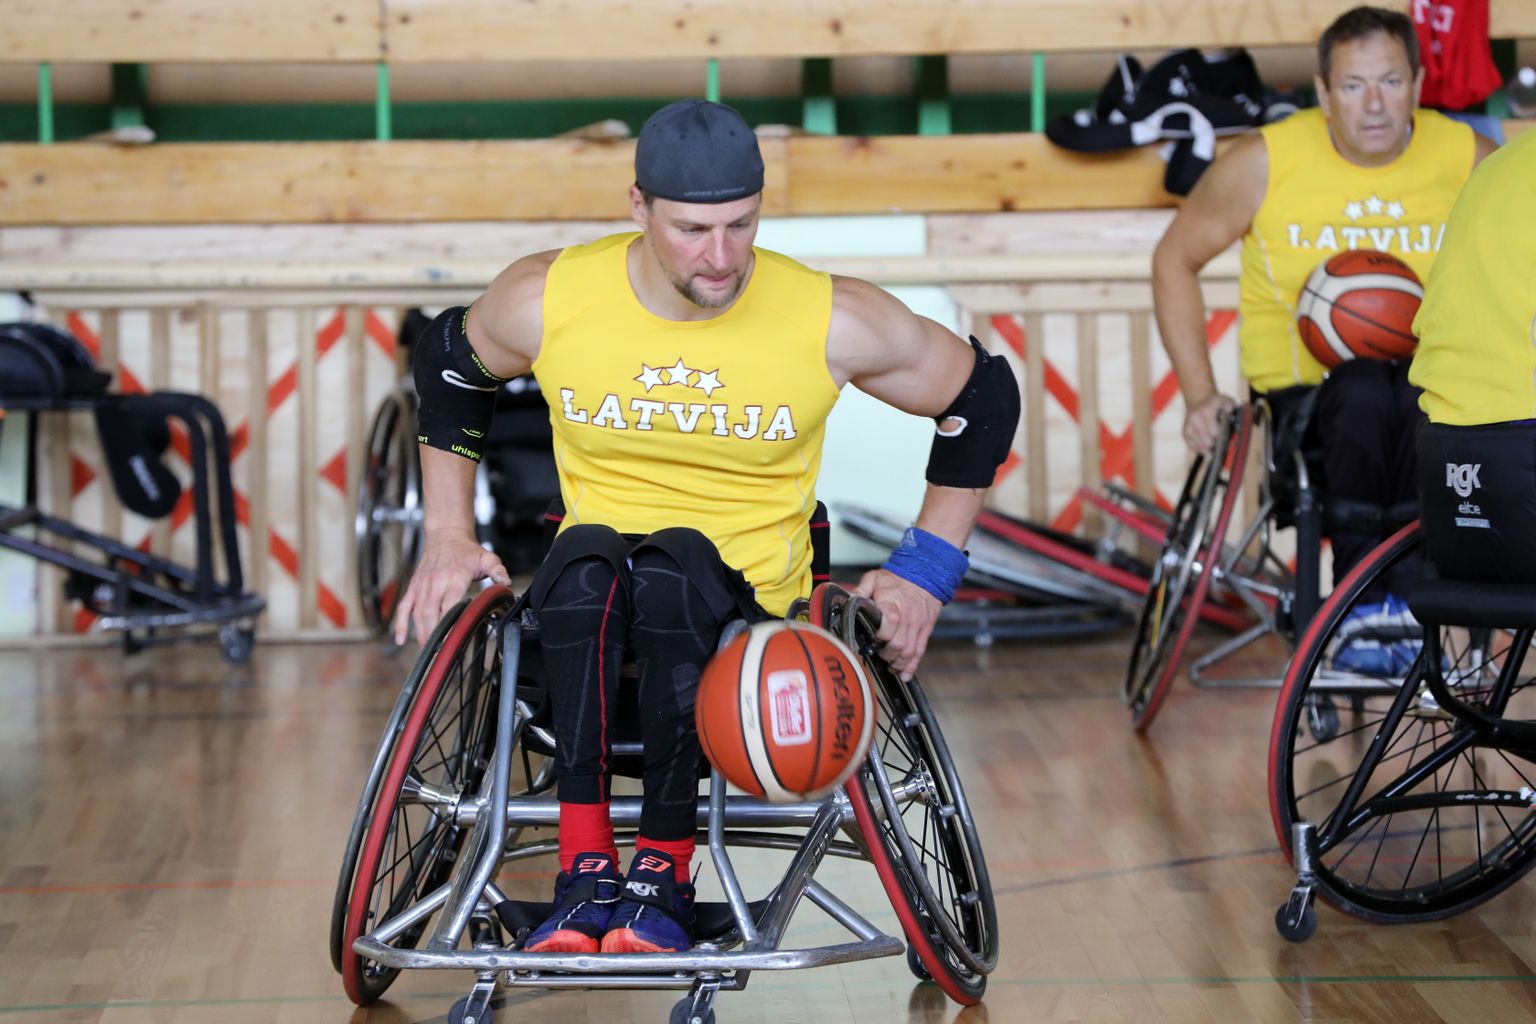 Latvijas ratiņbasketbola izlase Priekuļu vidusskolā savā otrajā 2020.gada treniņnometnē pirms oktobrī Atēnās gaidāmā Eiropas čempionāta.